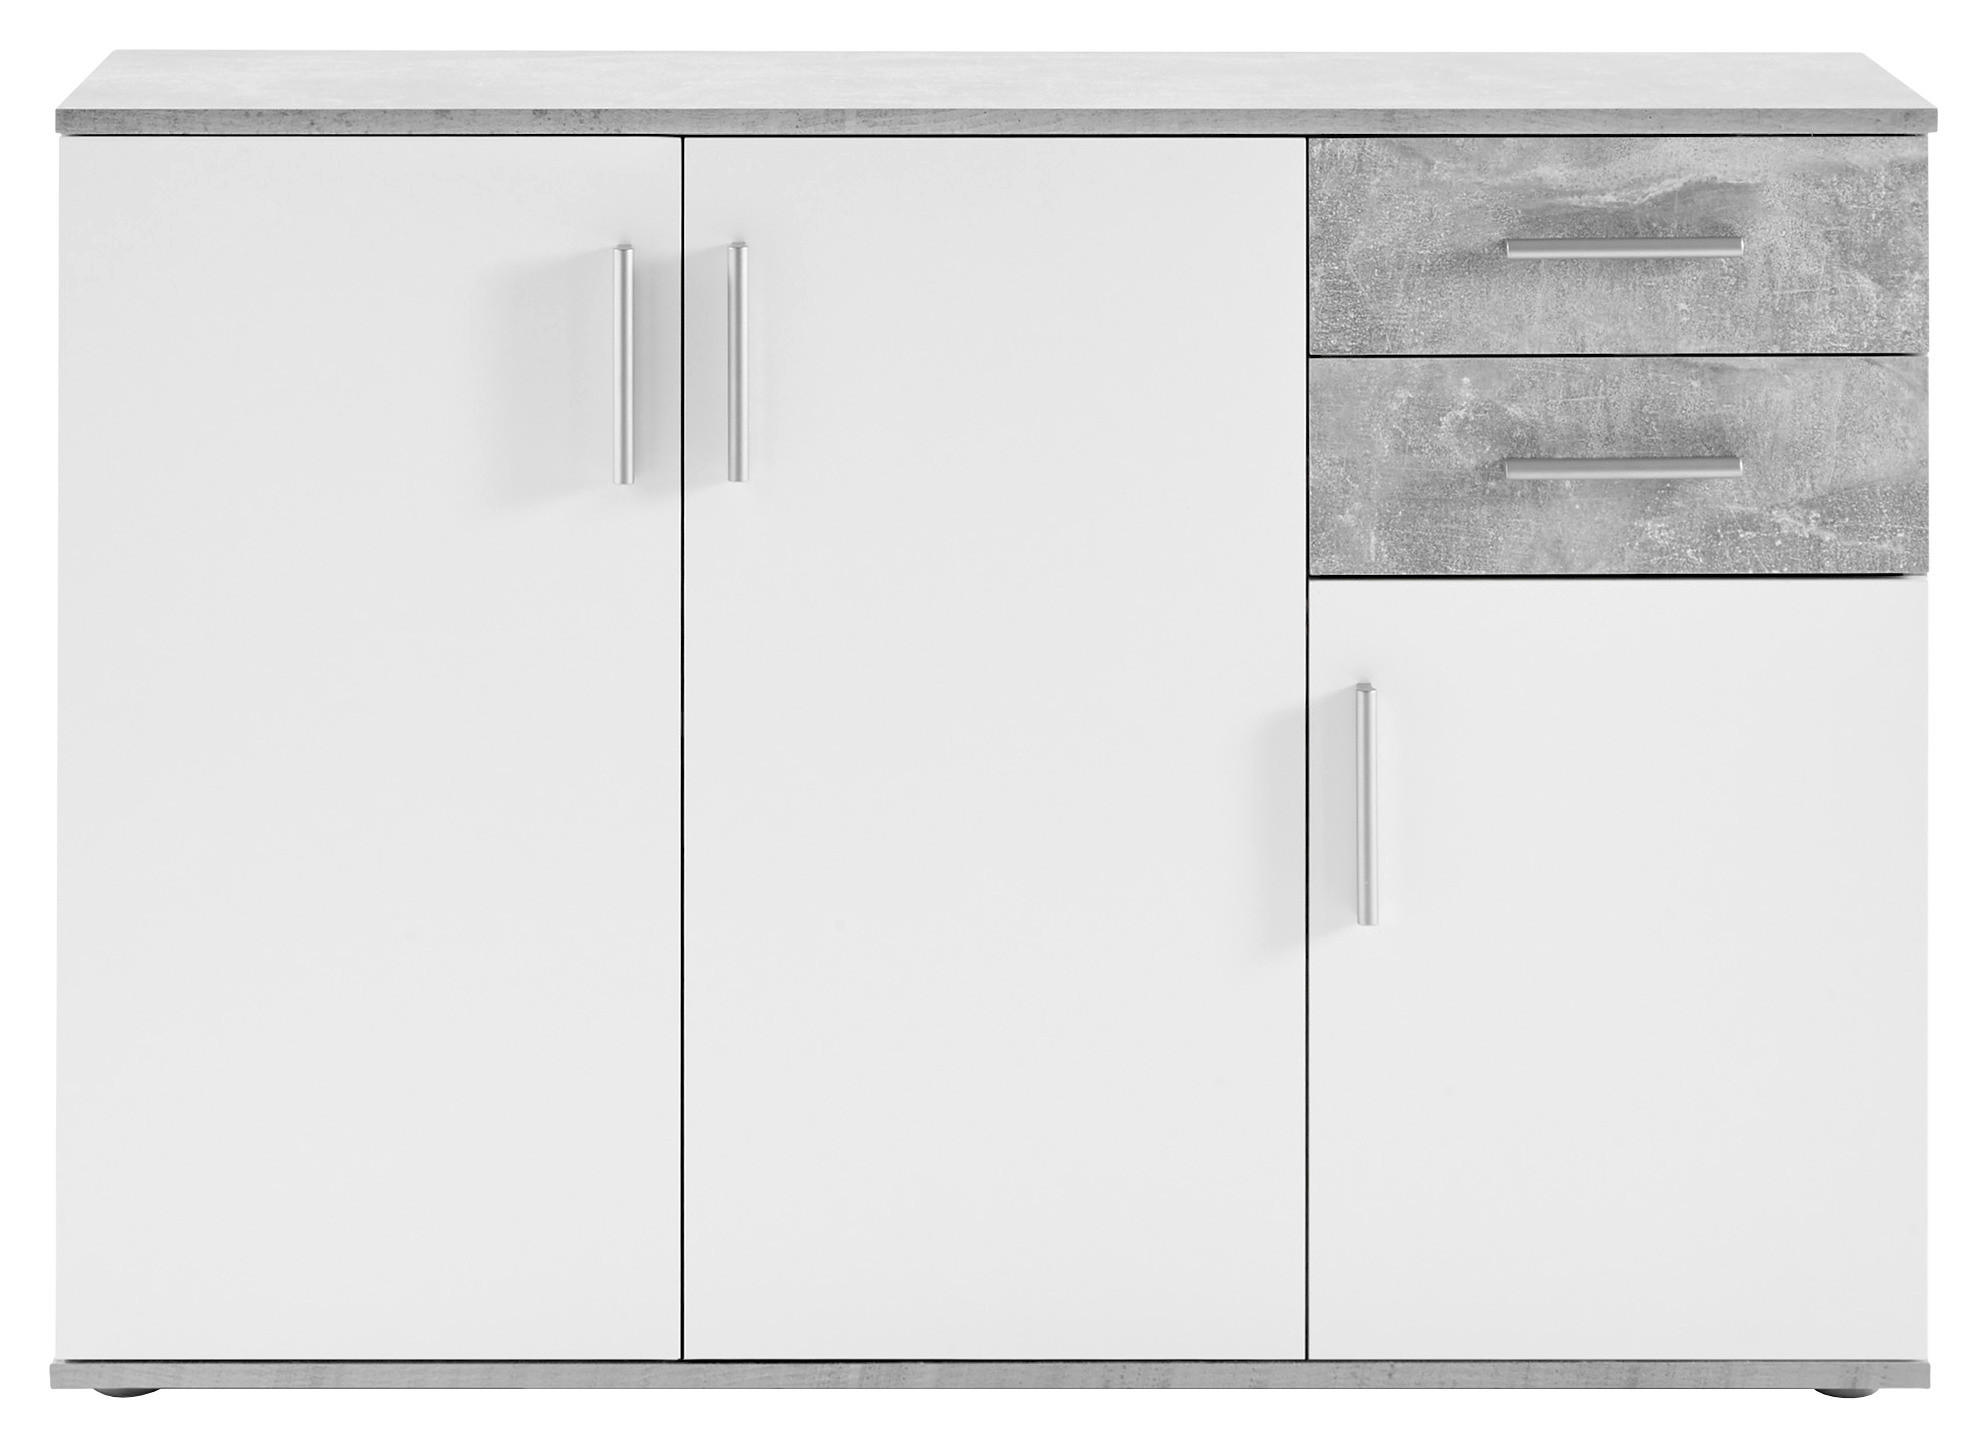 KOMMODE Grau, Weiß  - Silberfarben/Weiß, KONVENTIONELL, Holzwerkstoff/Kunststoff (120/82/35cm) - Carryhome